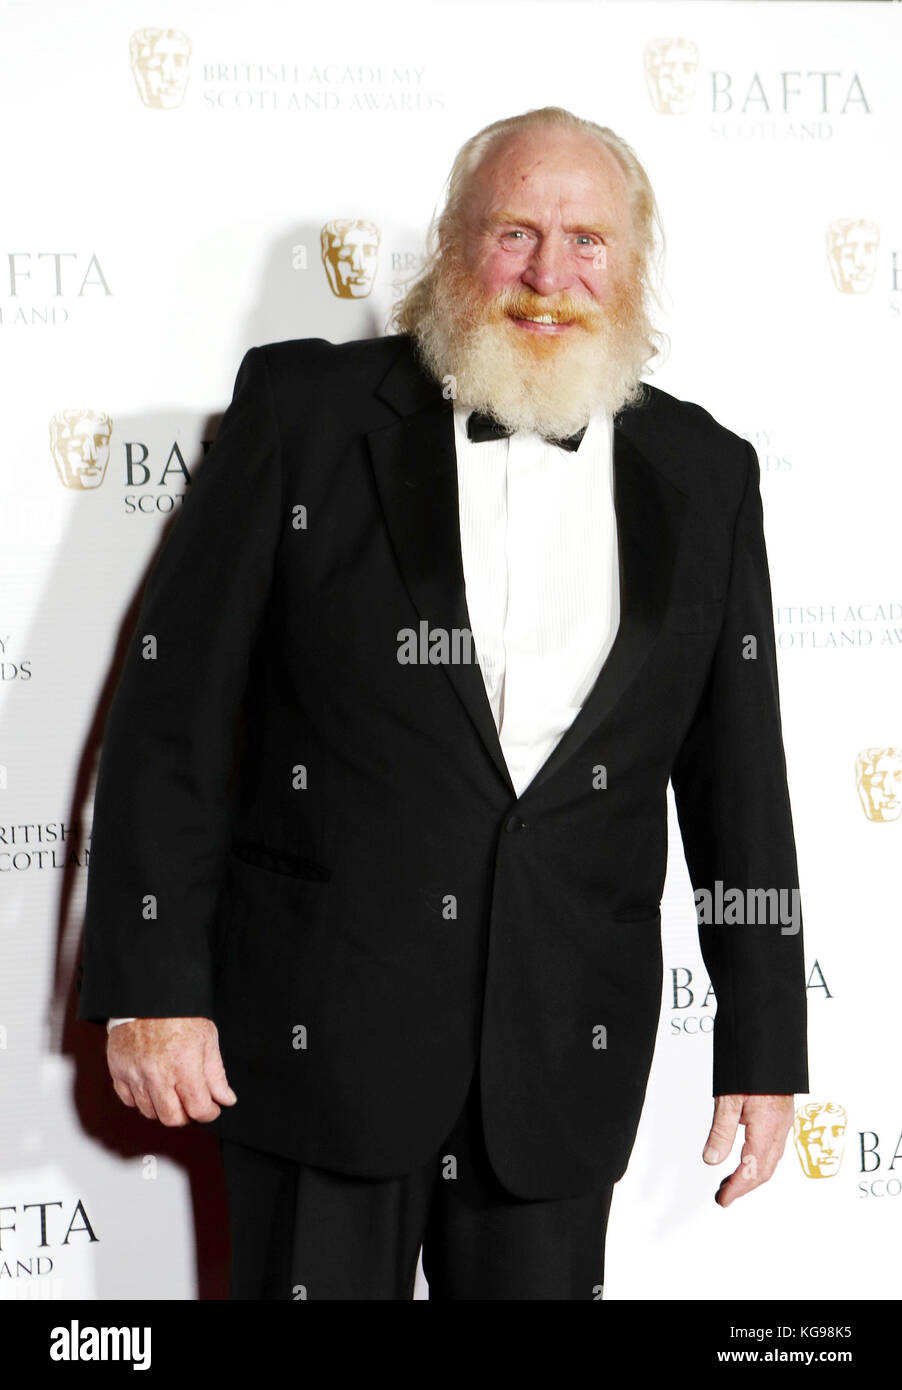 James Cosmo bei der Ankunft bei den British Academy Scottish Awards im Radisson Blu Hotel in Glasgow. Stockfoto